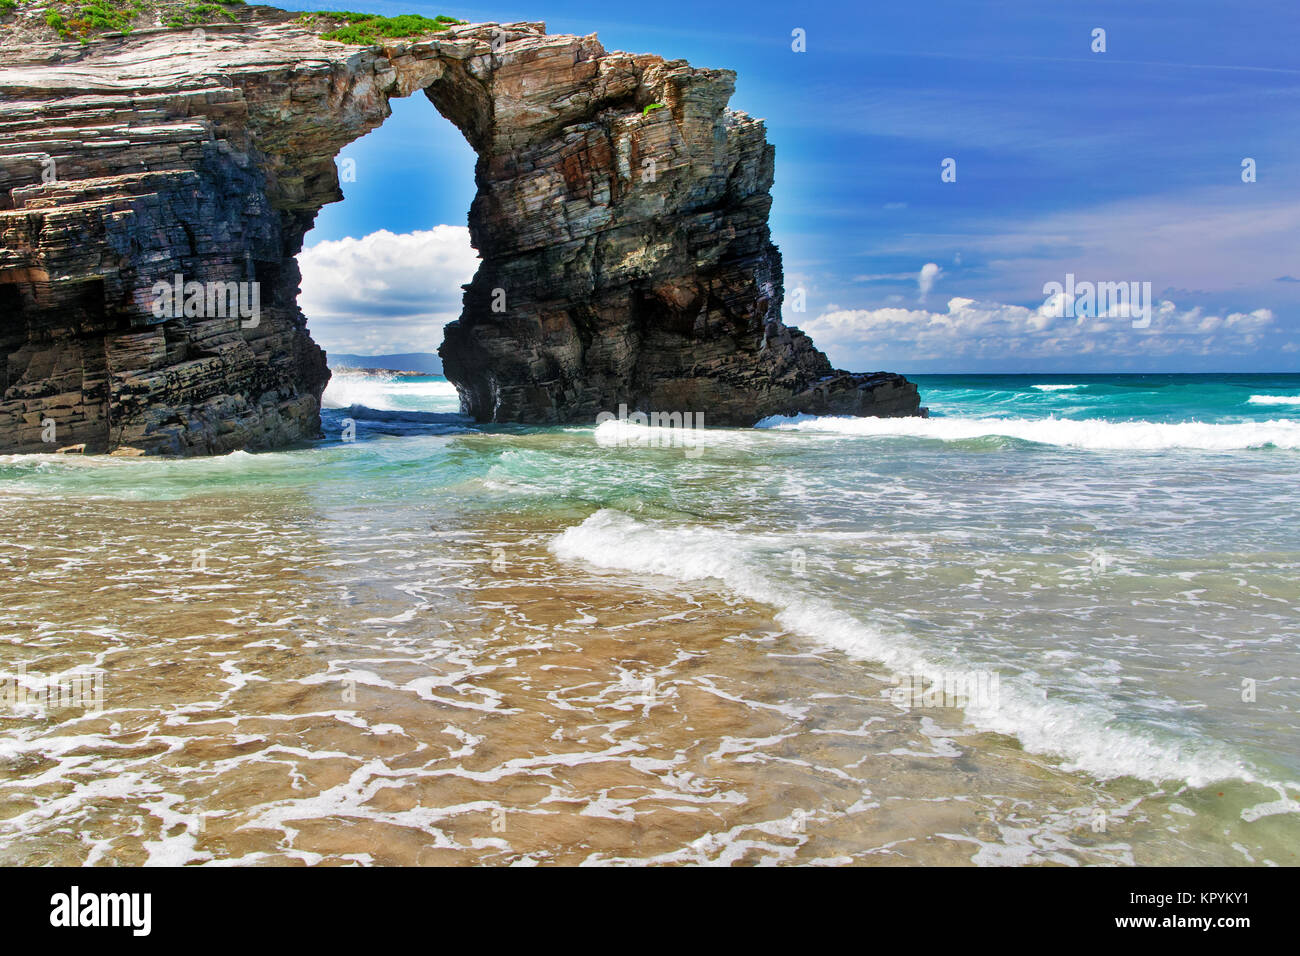 La roccia a forma di arco sulla spiaggia dell'oceano. Spagna settentrionale, Praia de Augas Santas, soleggiata giornata estiva Foto Stock